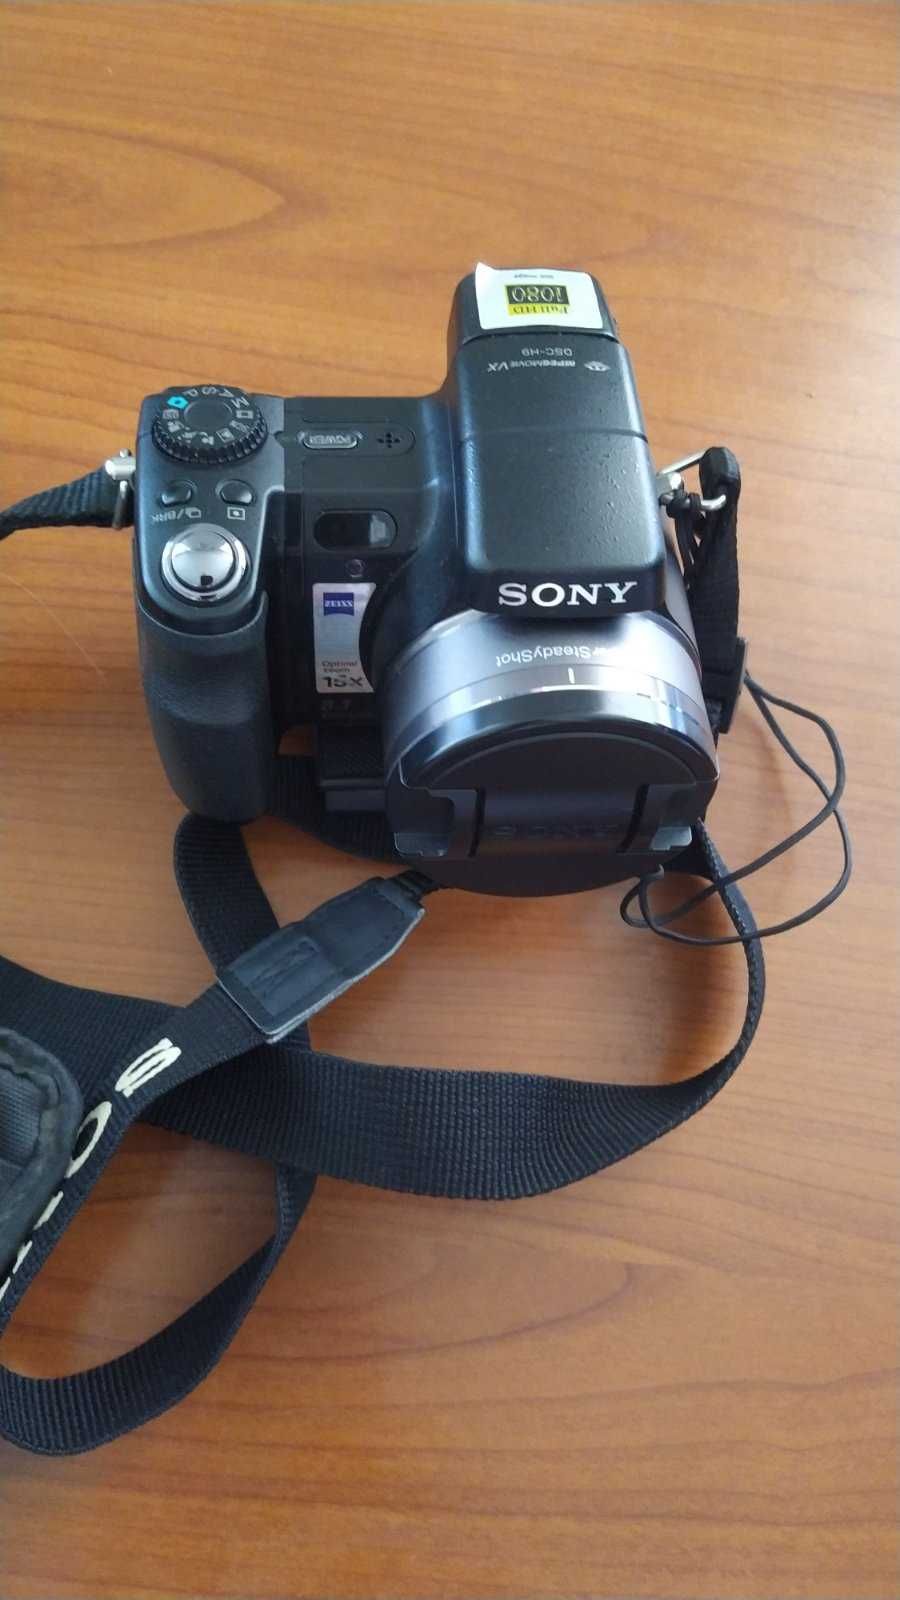 Цифровой фотоаппарат SONY Cyber-shot DSC-H9. Отл. состояние